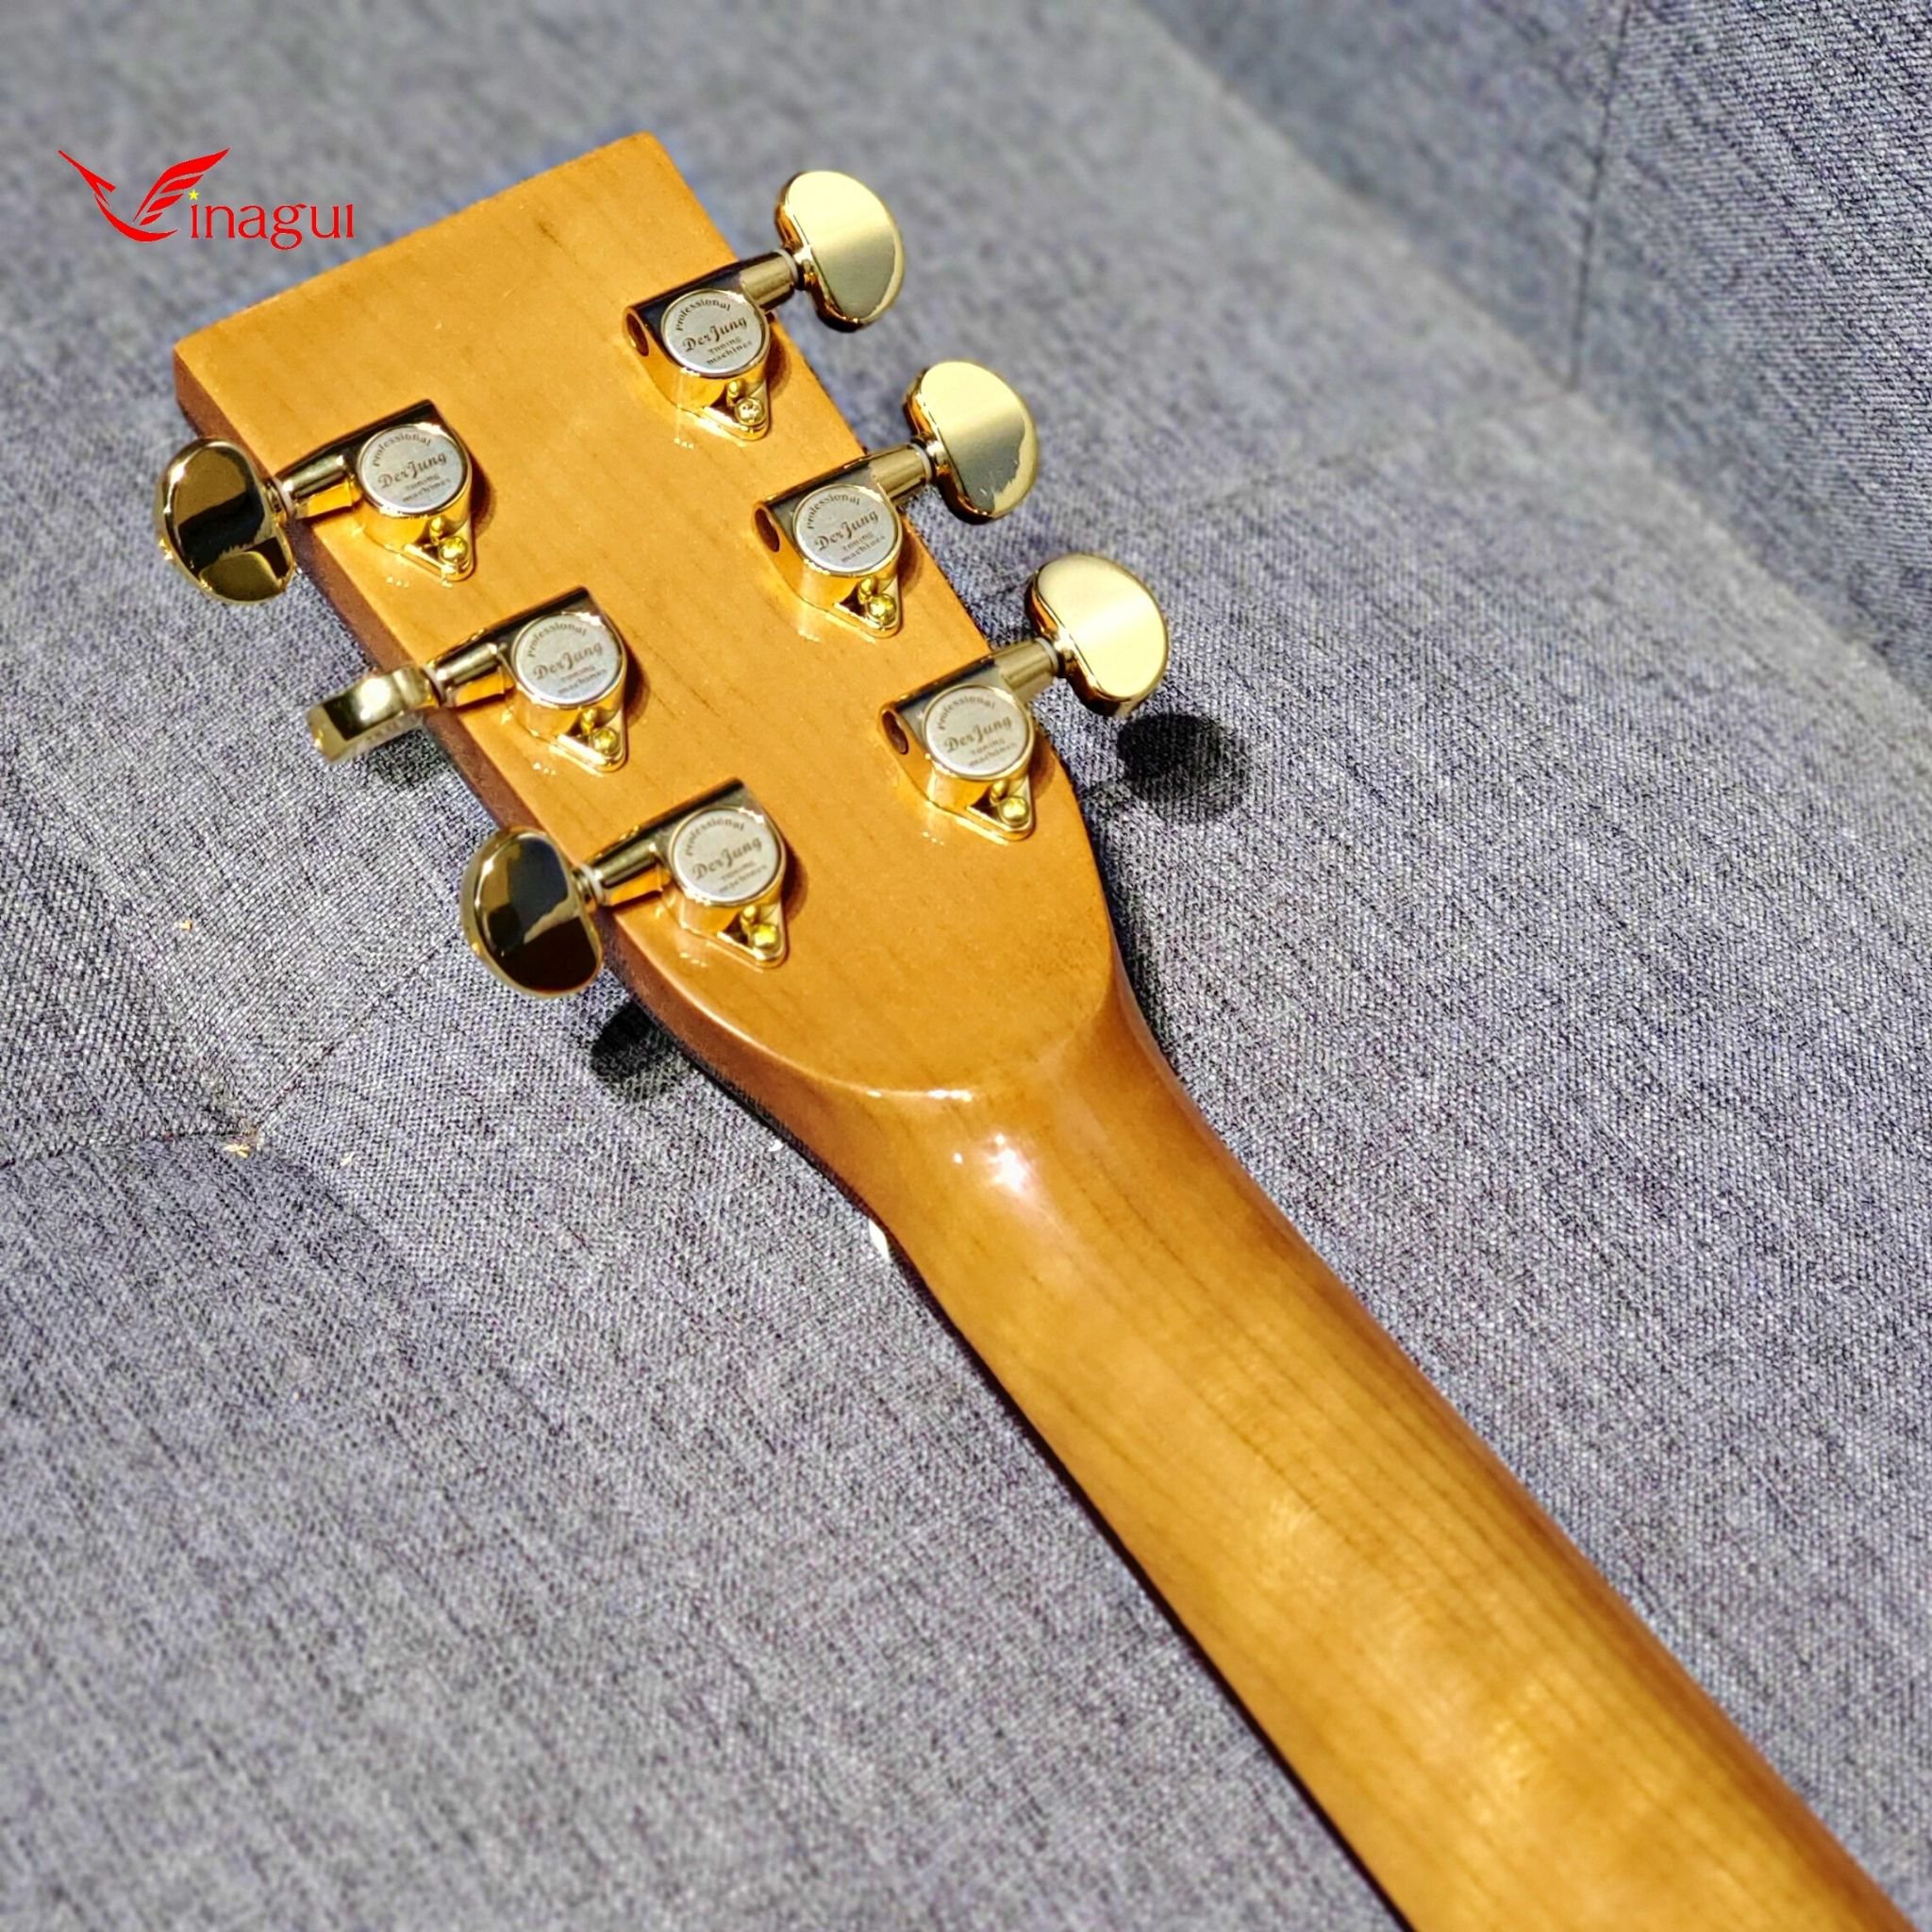 Guitar Acoustic Custom [GỖ MAHOGANY] Cẩn Xà Cừ Vinagui Cao Cấp